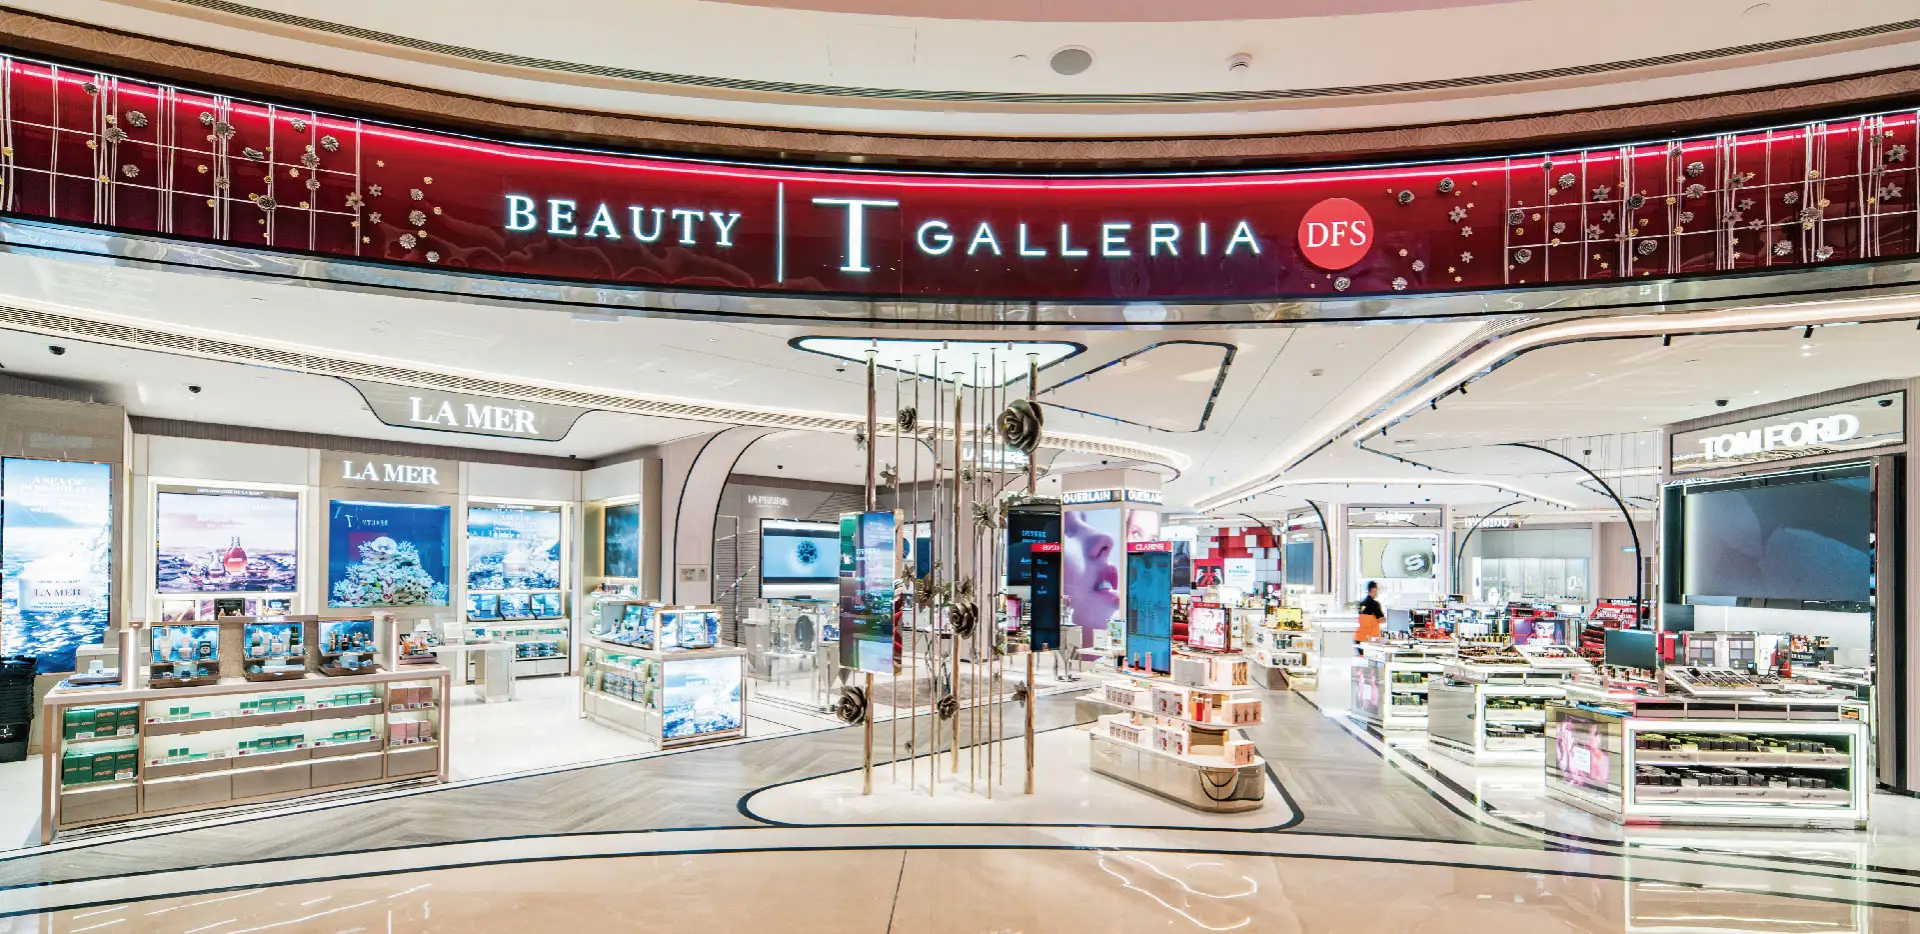 T Galleria Beauty by DFS Galaxy Macau